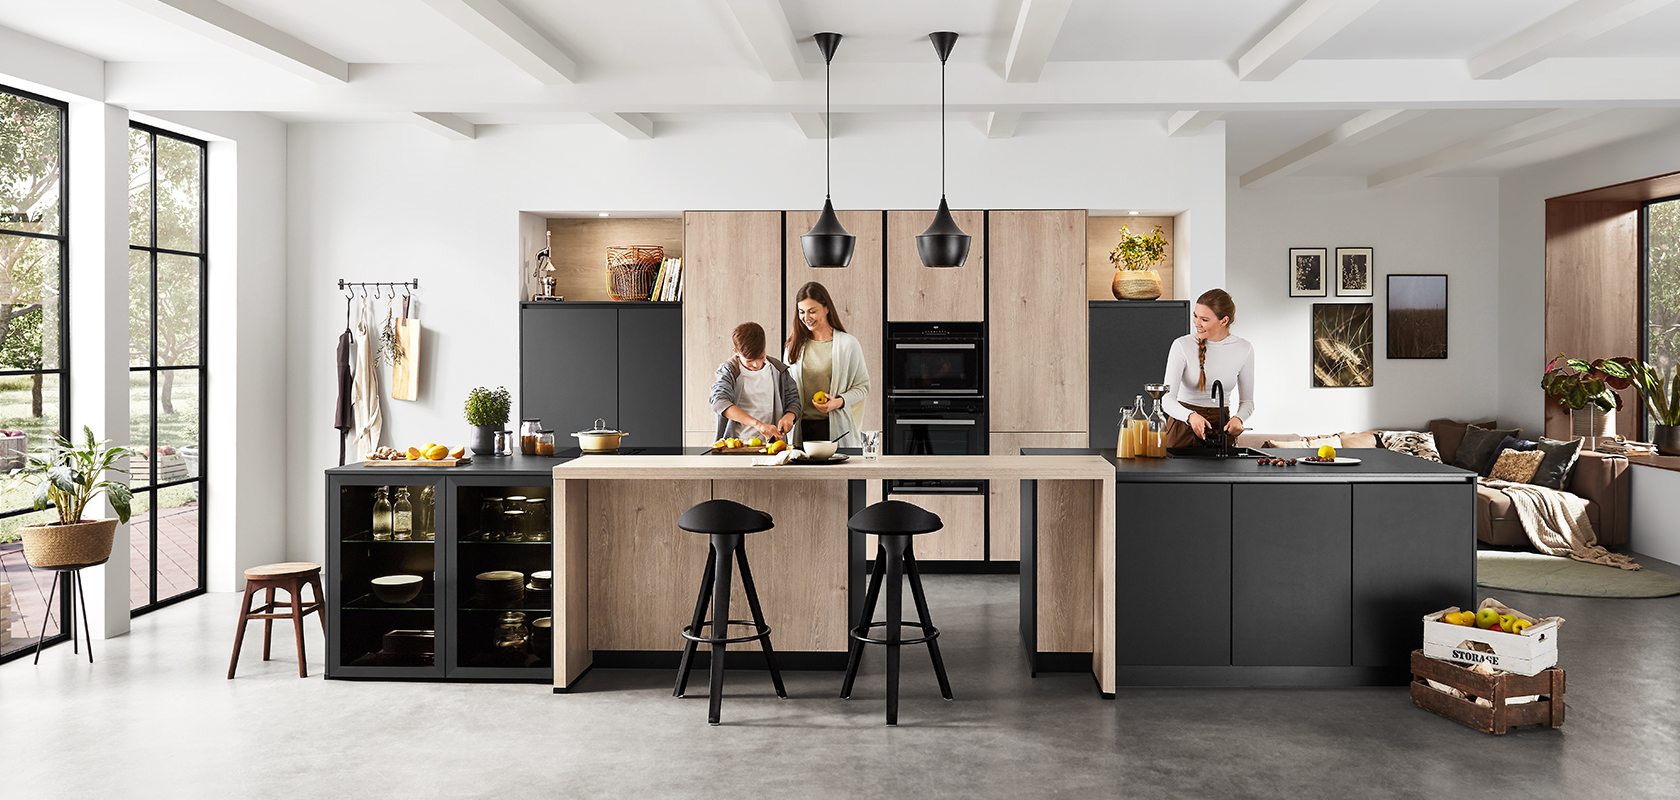 Intérieur de cuisine moderne avec un design spacieux et épuré mettant en scène deux personnes en train de cuisiner et de discuter, mettant en valeur la fonctionnalité et le style contemporain.